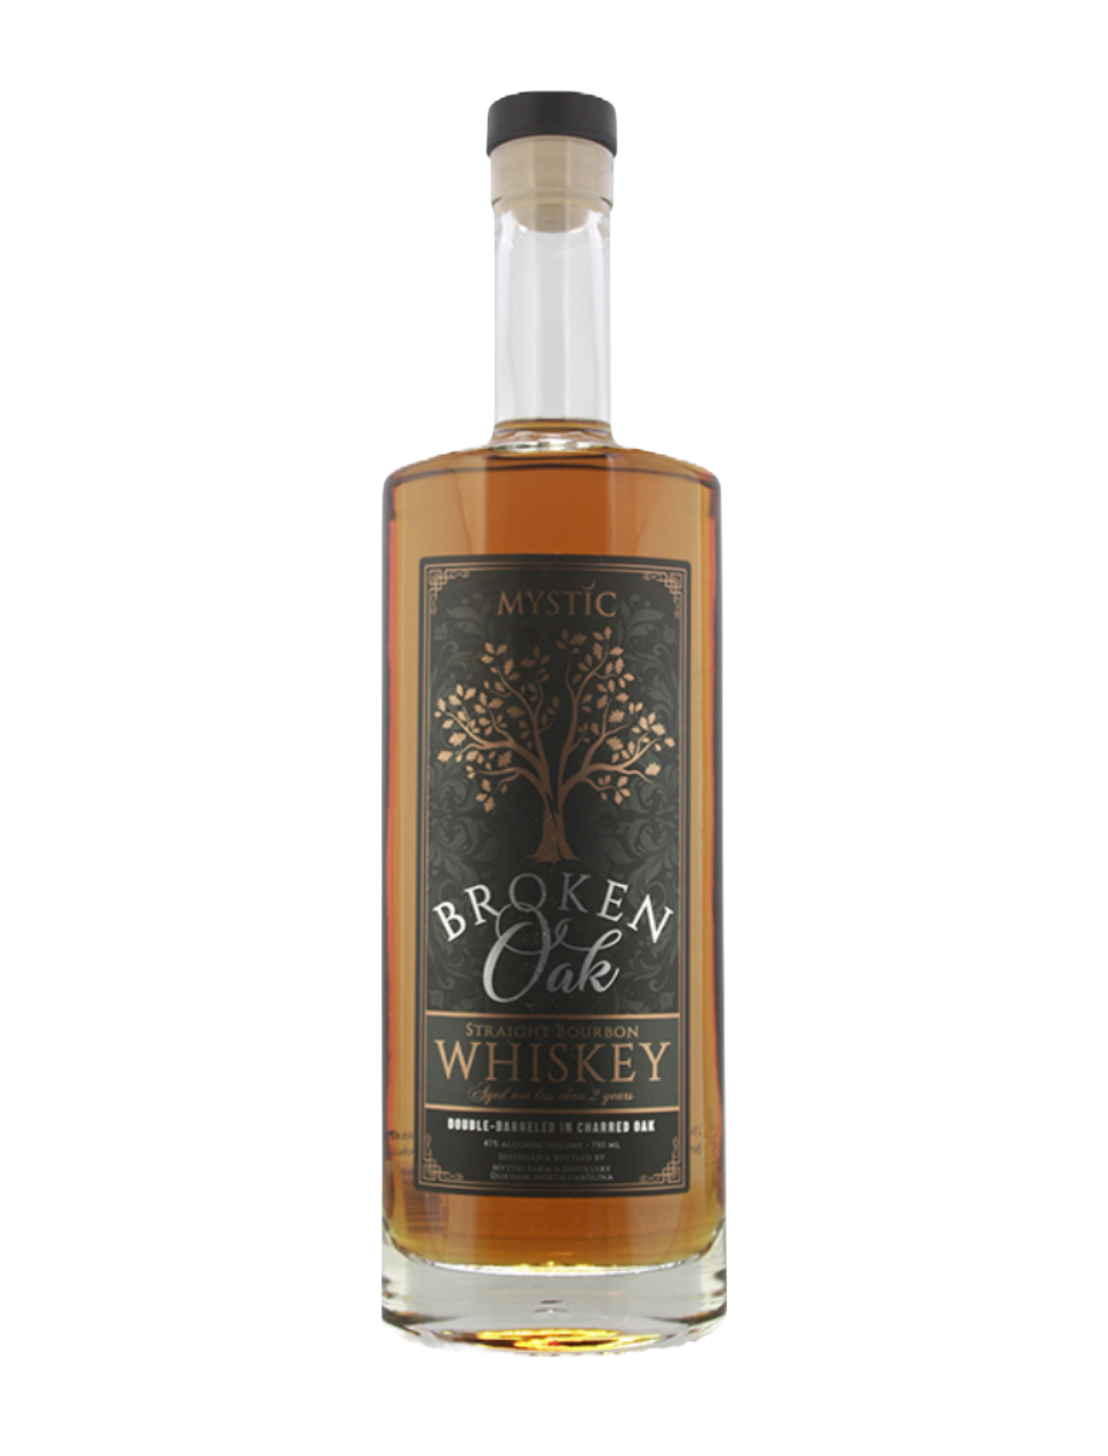 An elegant bottle of Mystic Farm & Distillery Broken Oak Small Batch Bourbon in front of a plain white background